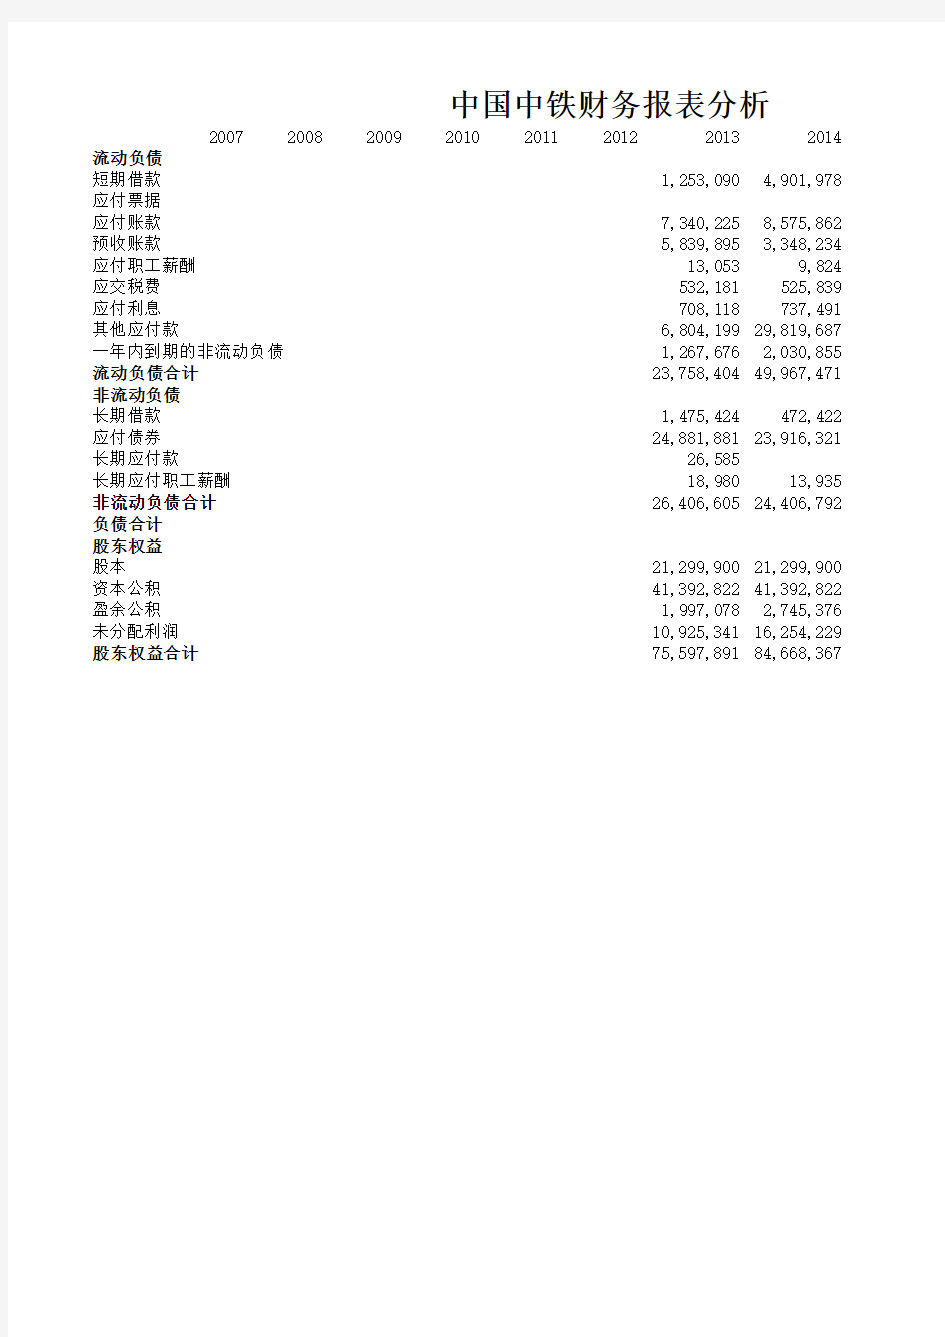 中国中铁历年财务报表分析